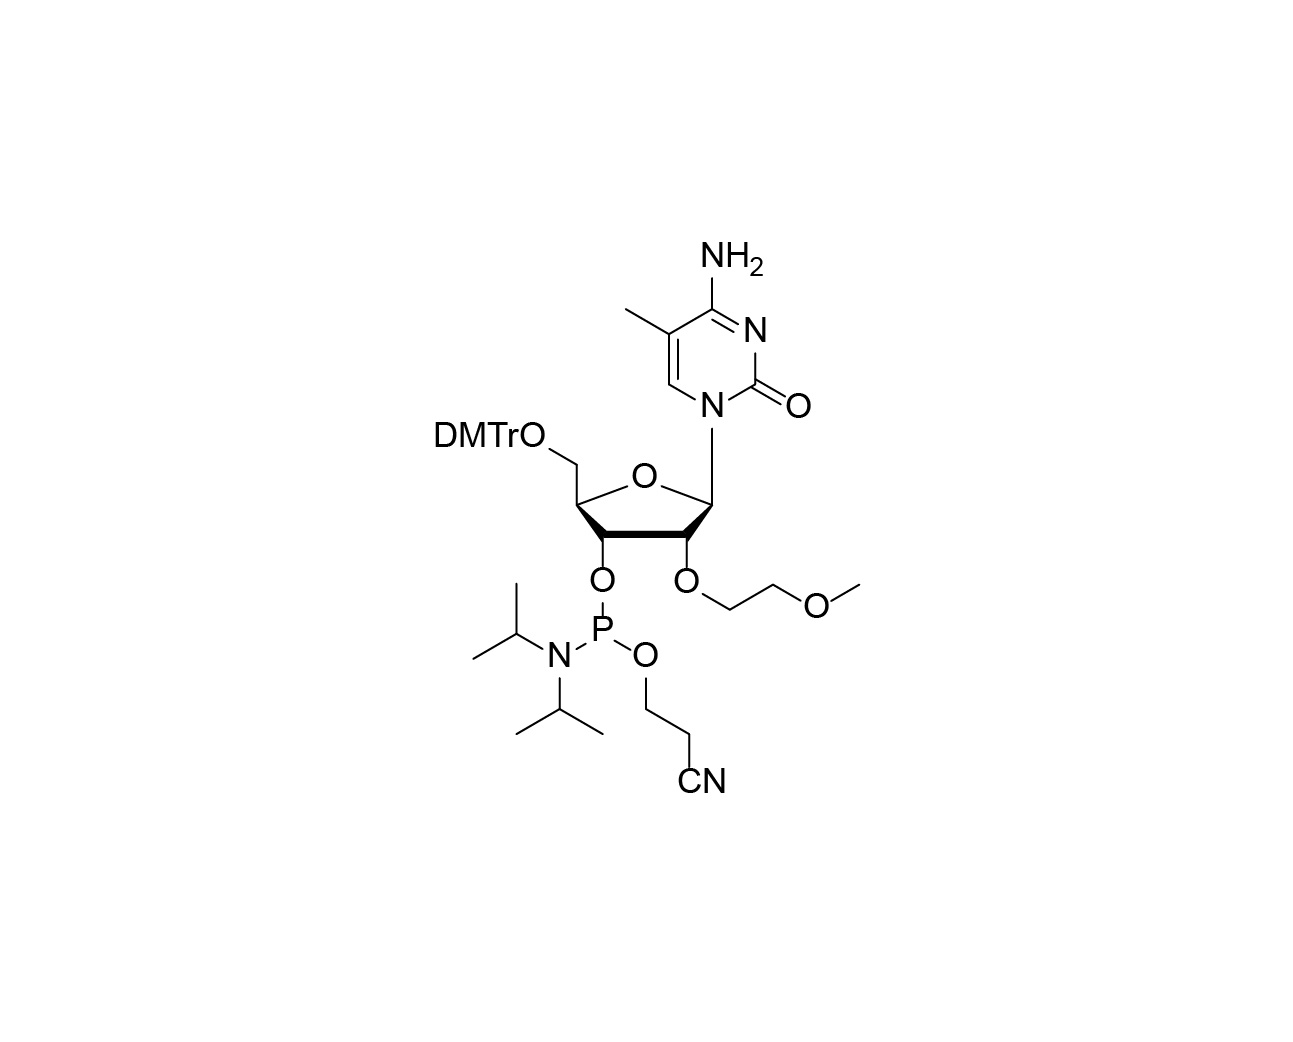 DMTr-2'-O-MOE-5-Me-rC-3'-CE-Phosphoramidite